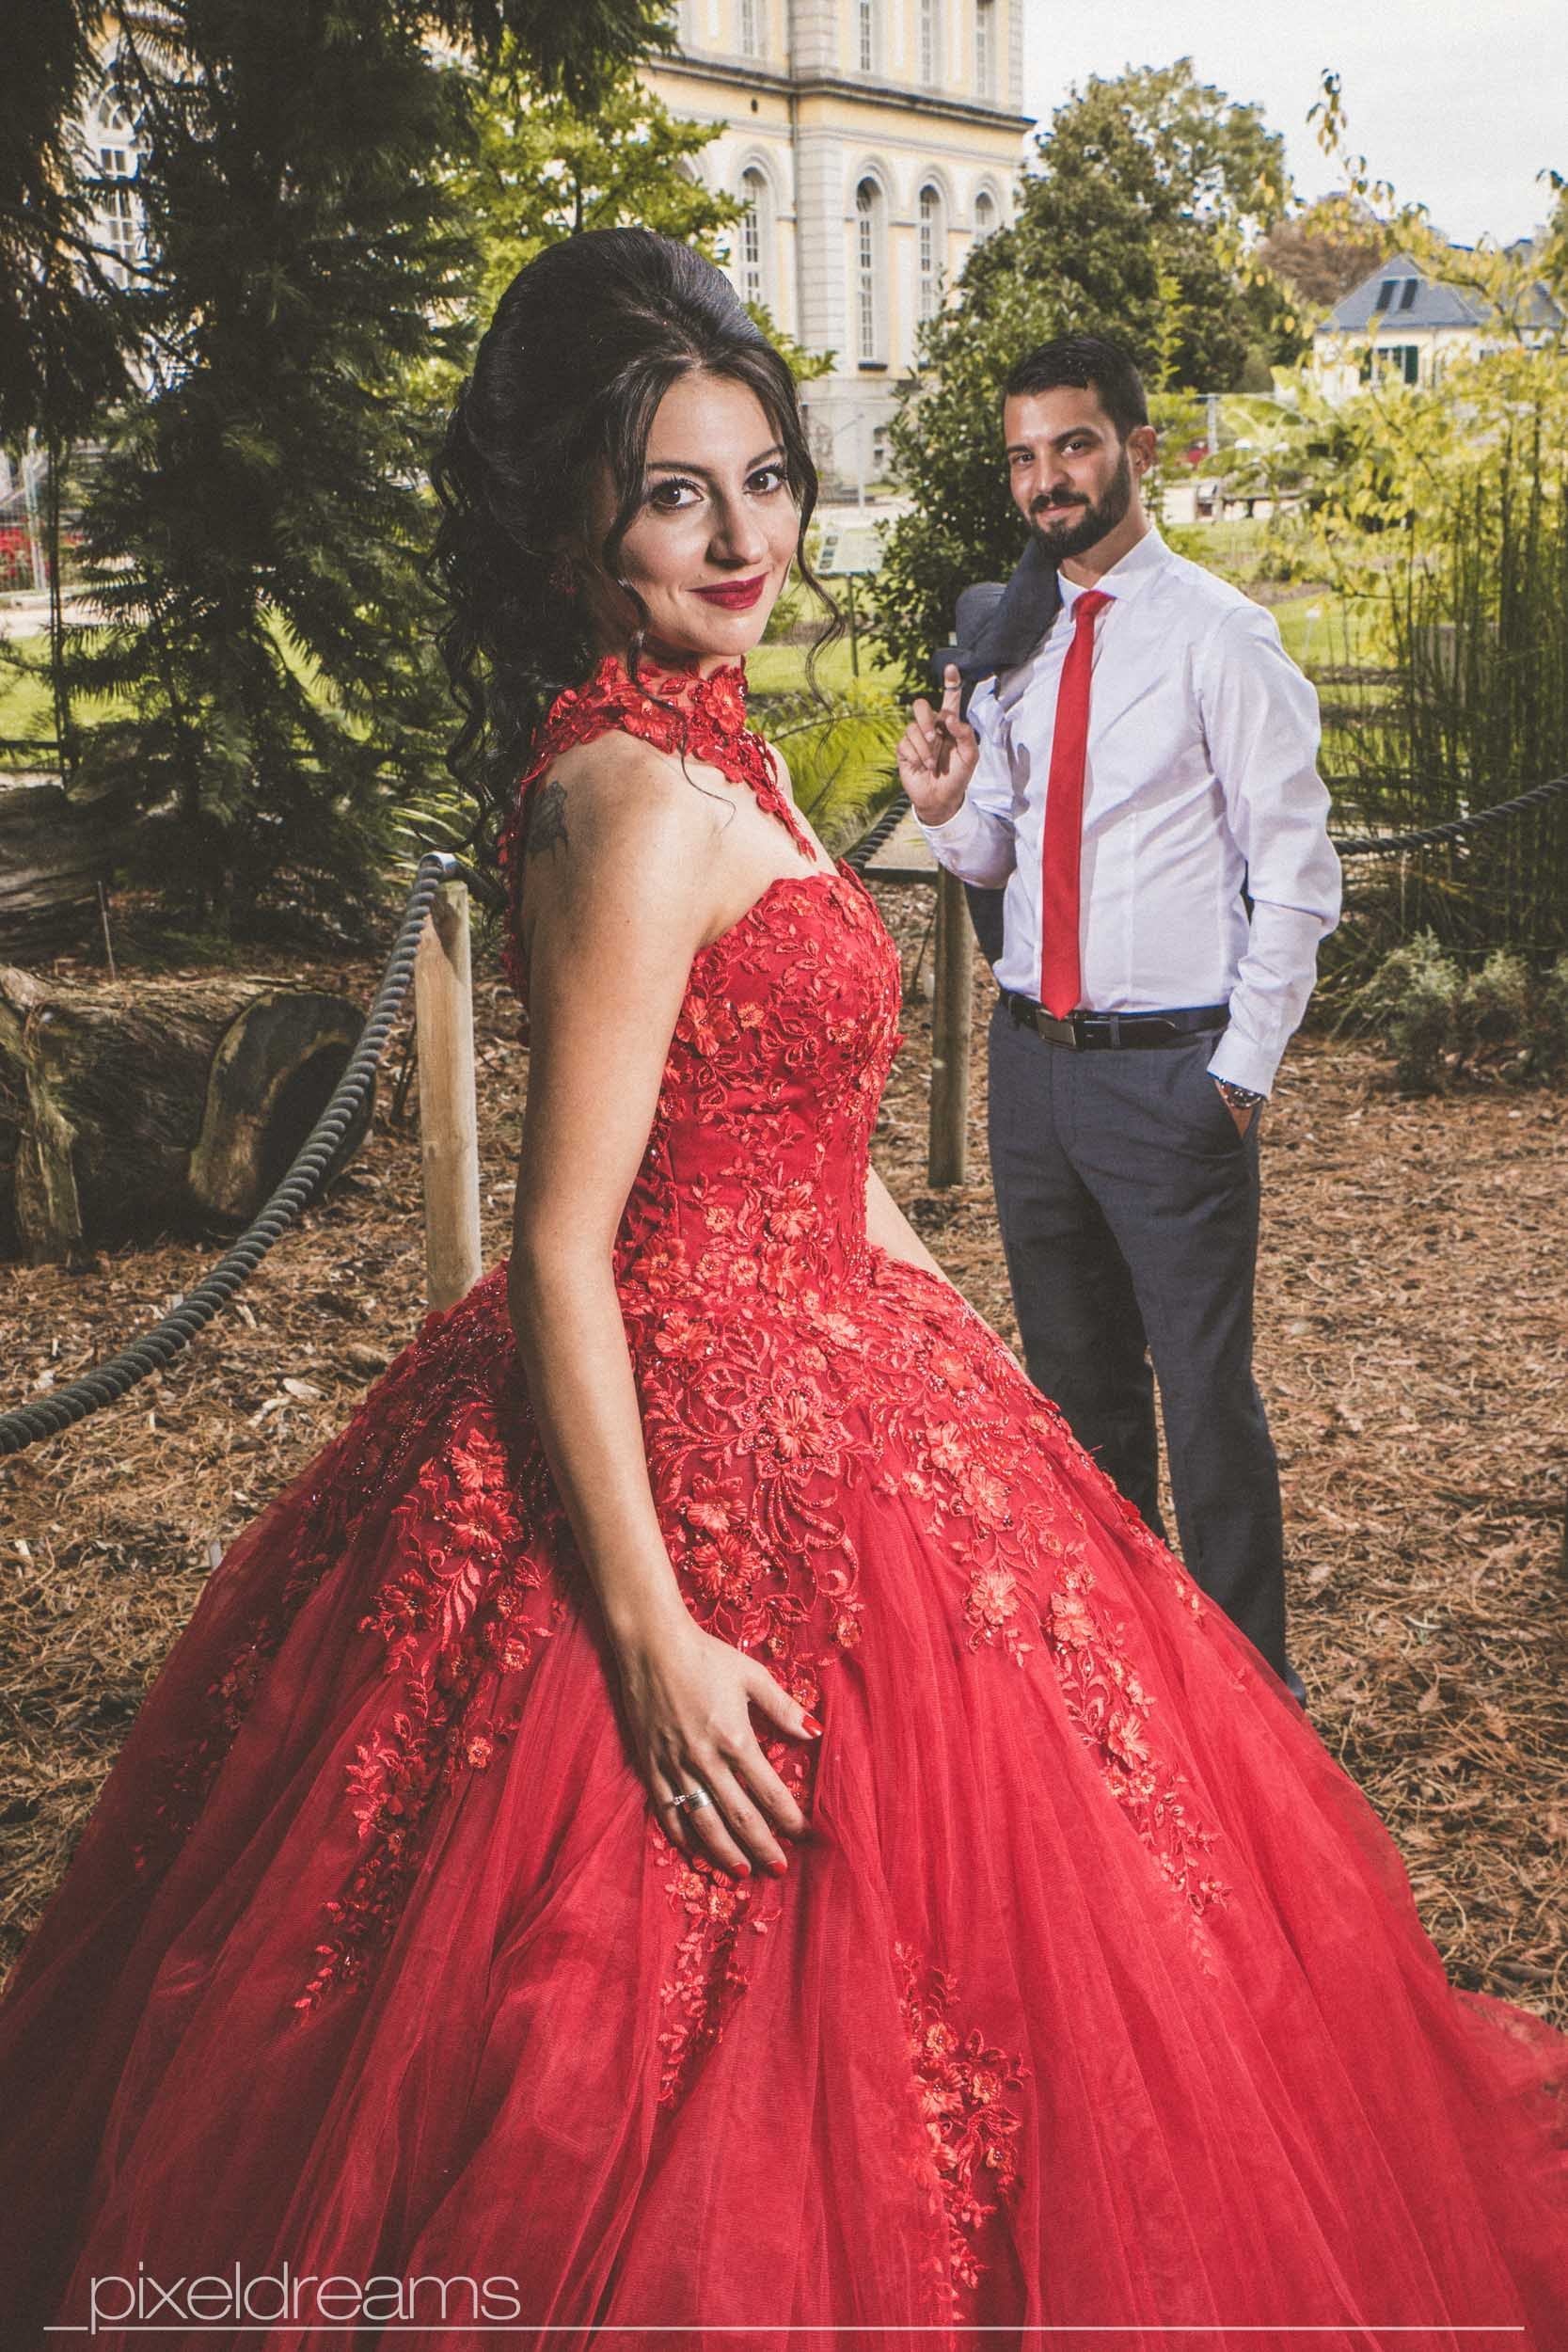 Rotes Kleid Hochzeit  Die Story Hinter Dem Roten Kleid In